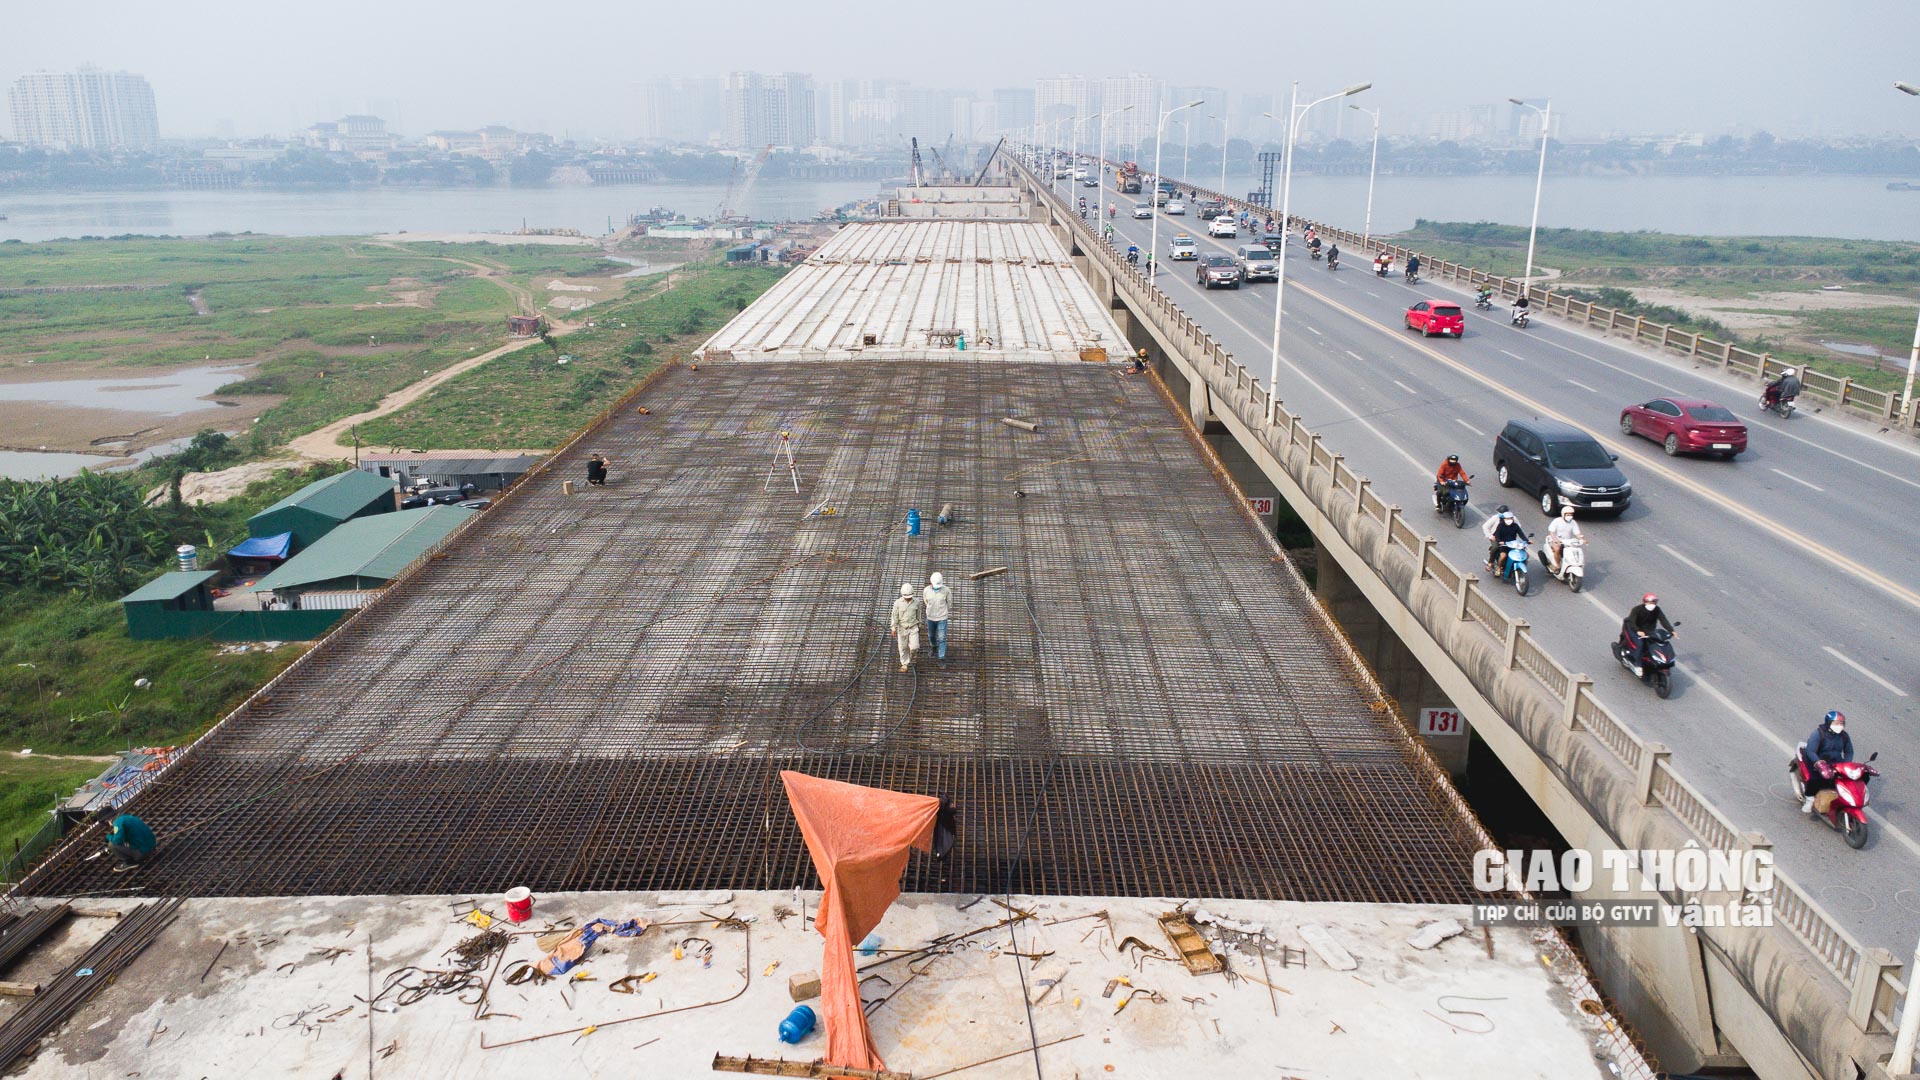 Gói thầu XL1: Xây dựng cầu chính vượt dòng chủ bao gồm cả đường công vụ, cầu phao, mố nhô phục vụ thi công của dự án cầu Vĩnh Tuy 2 được khởi công ngày 10/6/2021, tiến độ hoàn thành trong 24 tháng. Đây là gói thầu có quy mô lớn và quan trọng nhất của dự án.